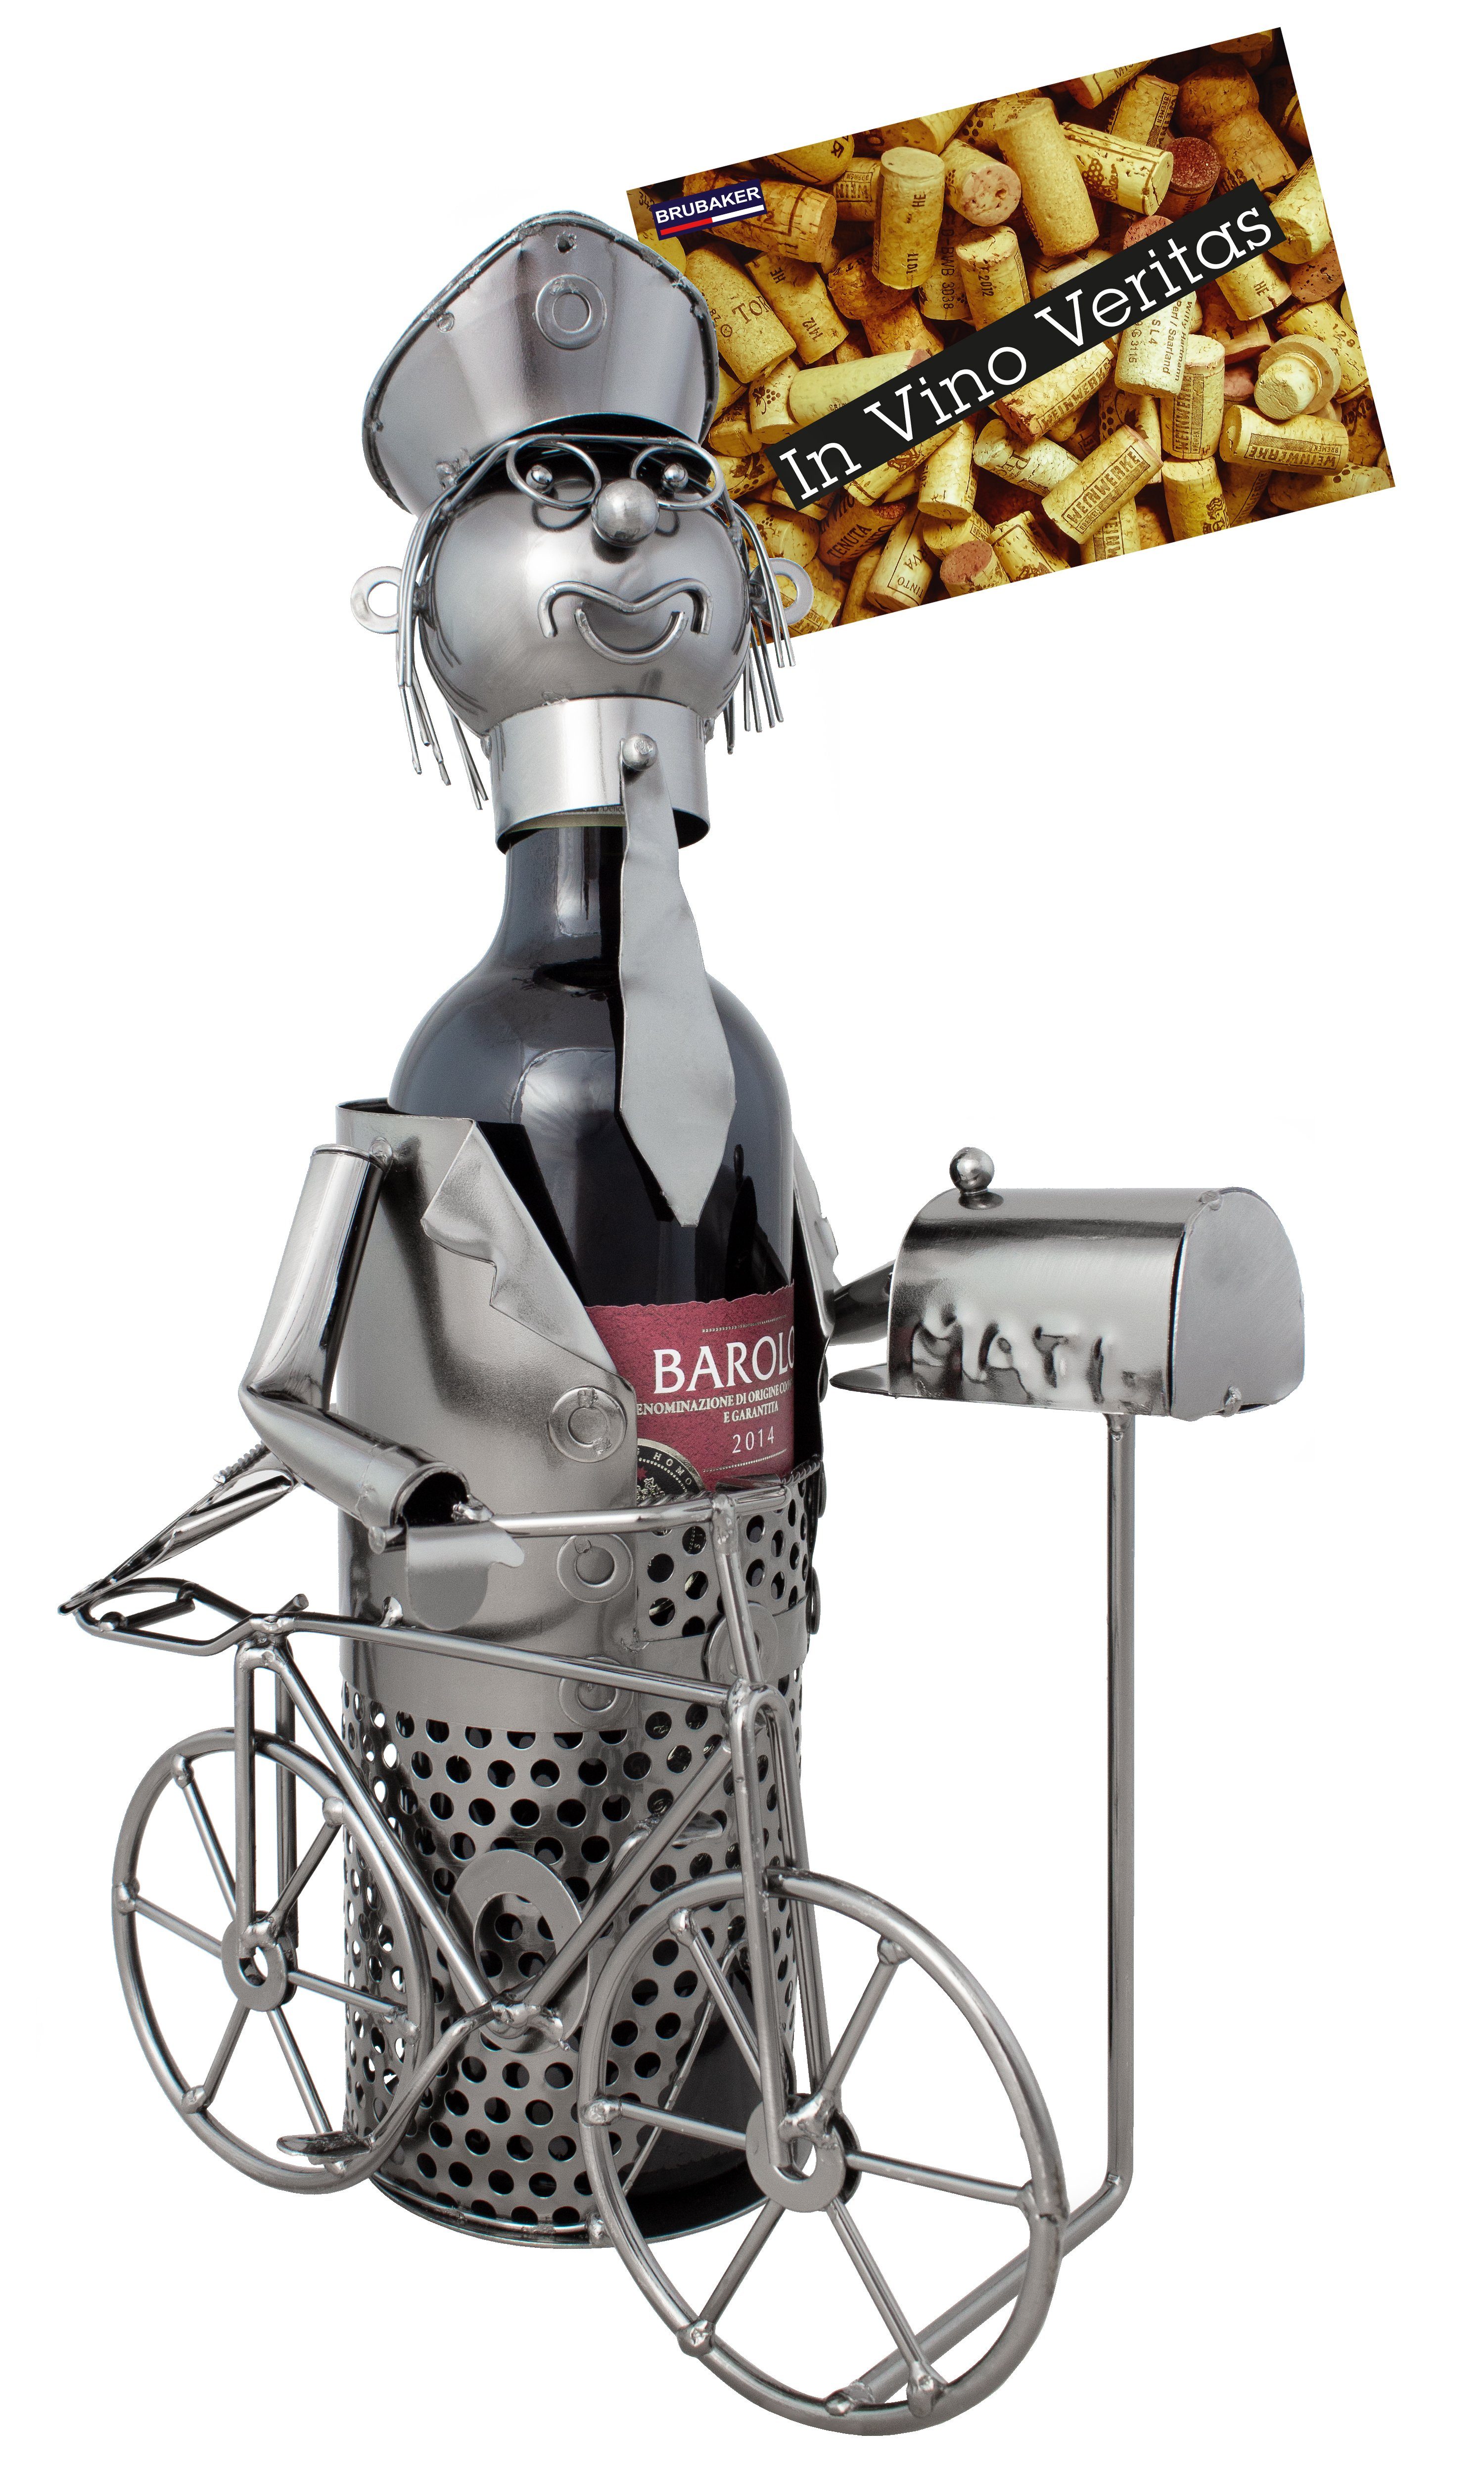 BRUBAKER Weinflaschenhalter Postbote beim Briefeinwurf mit Fahrrad,  (inklusive Grußkarte), Metall Skulptur, Wein Geschenk, Weinhalter,  Flaschenhalter